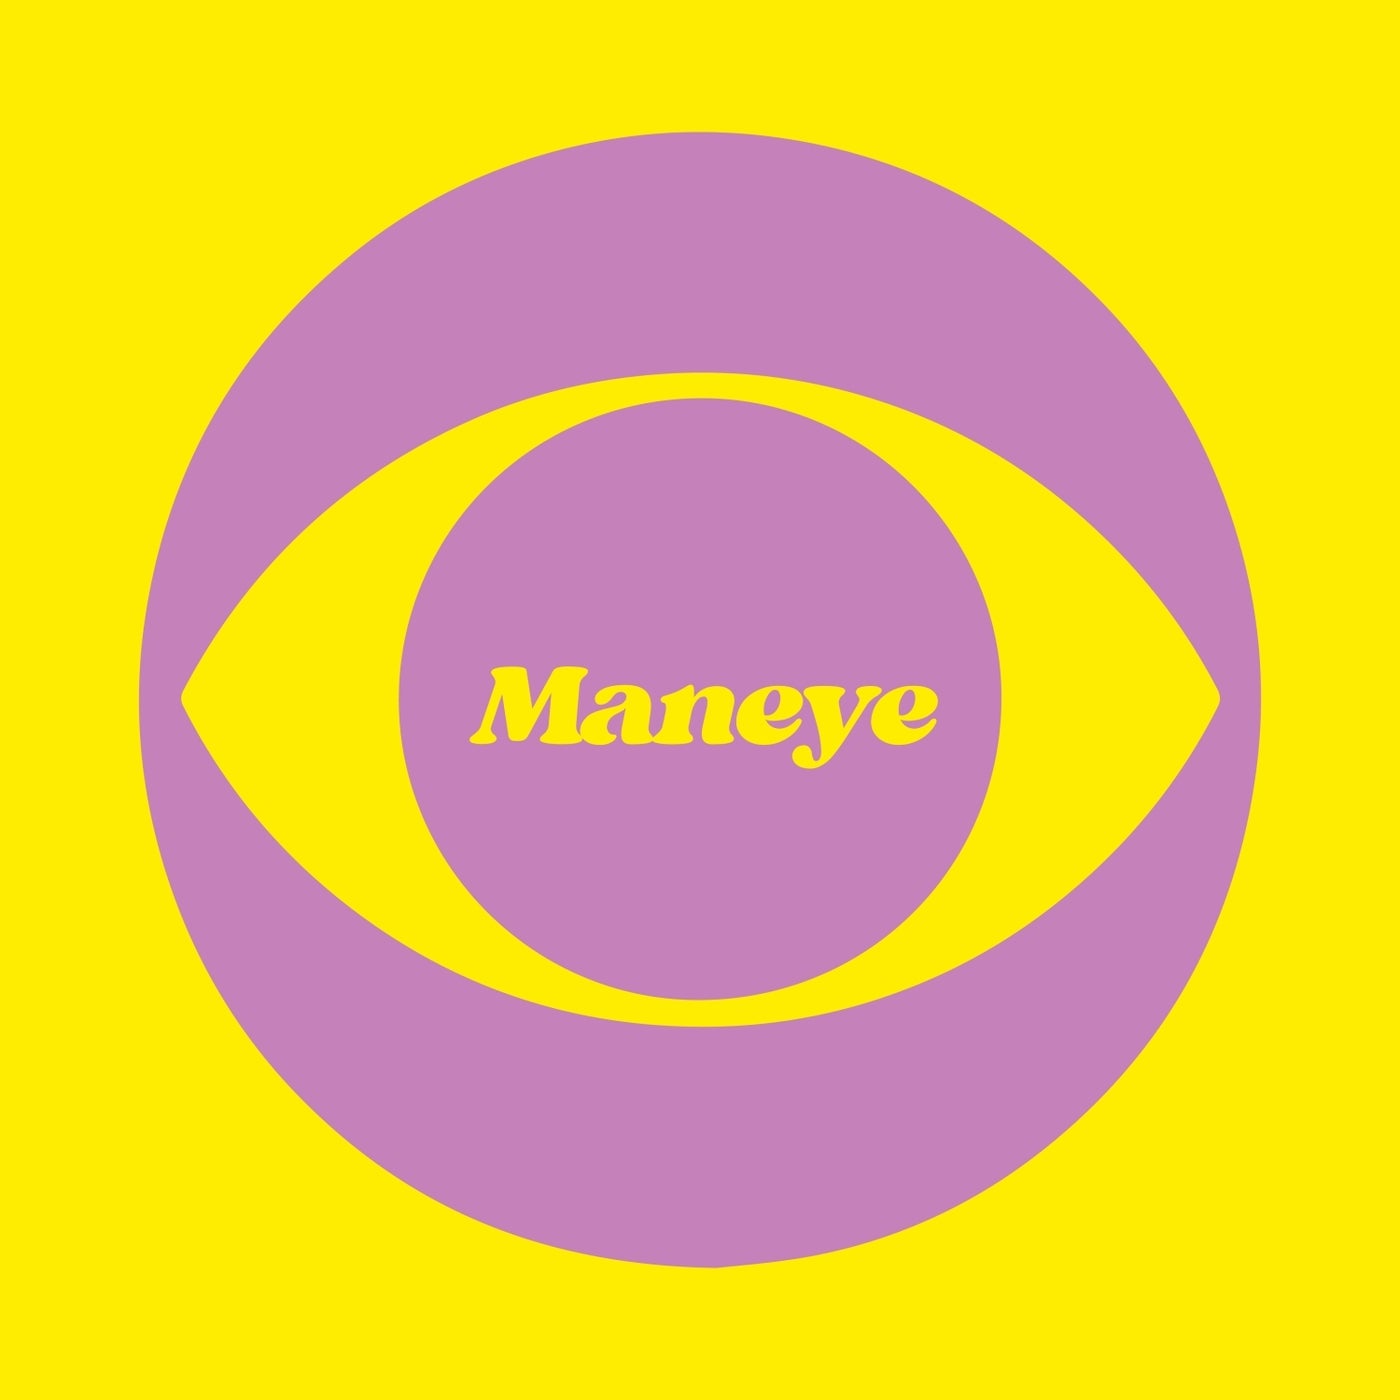 Maneye